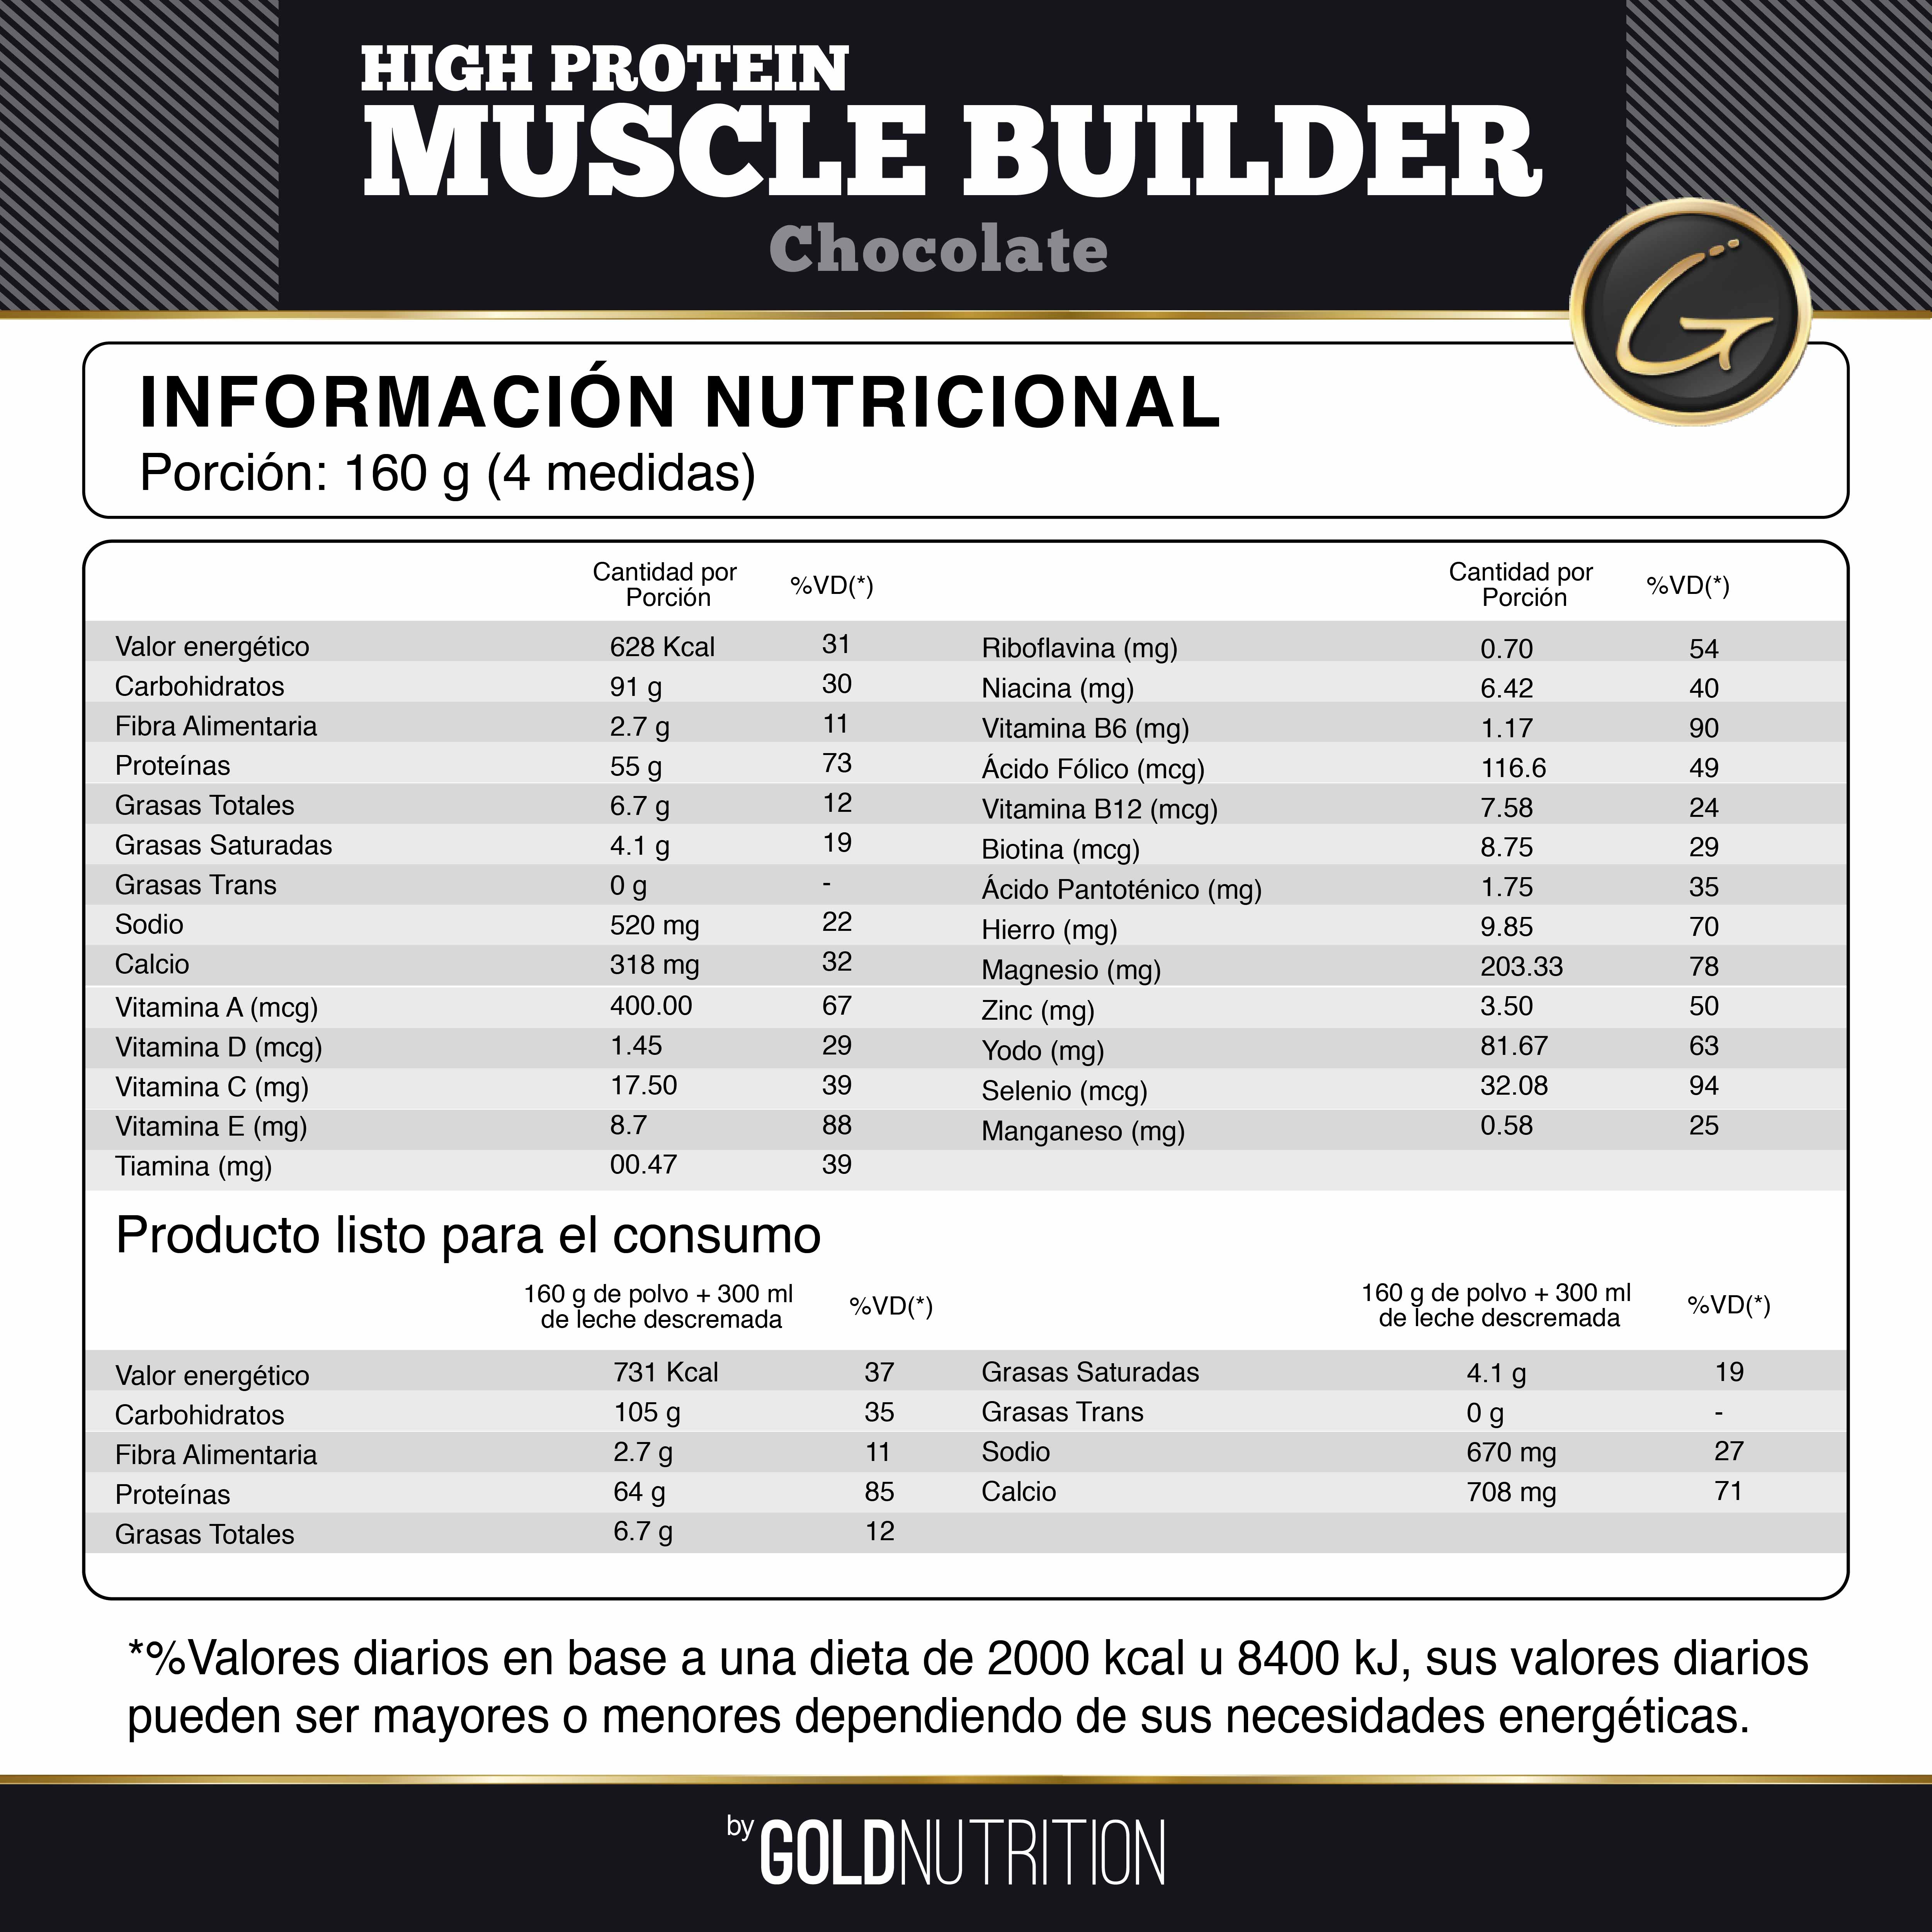 Info nutricional HPMBC